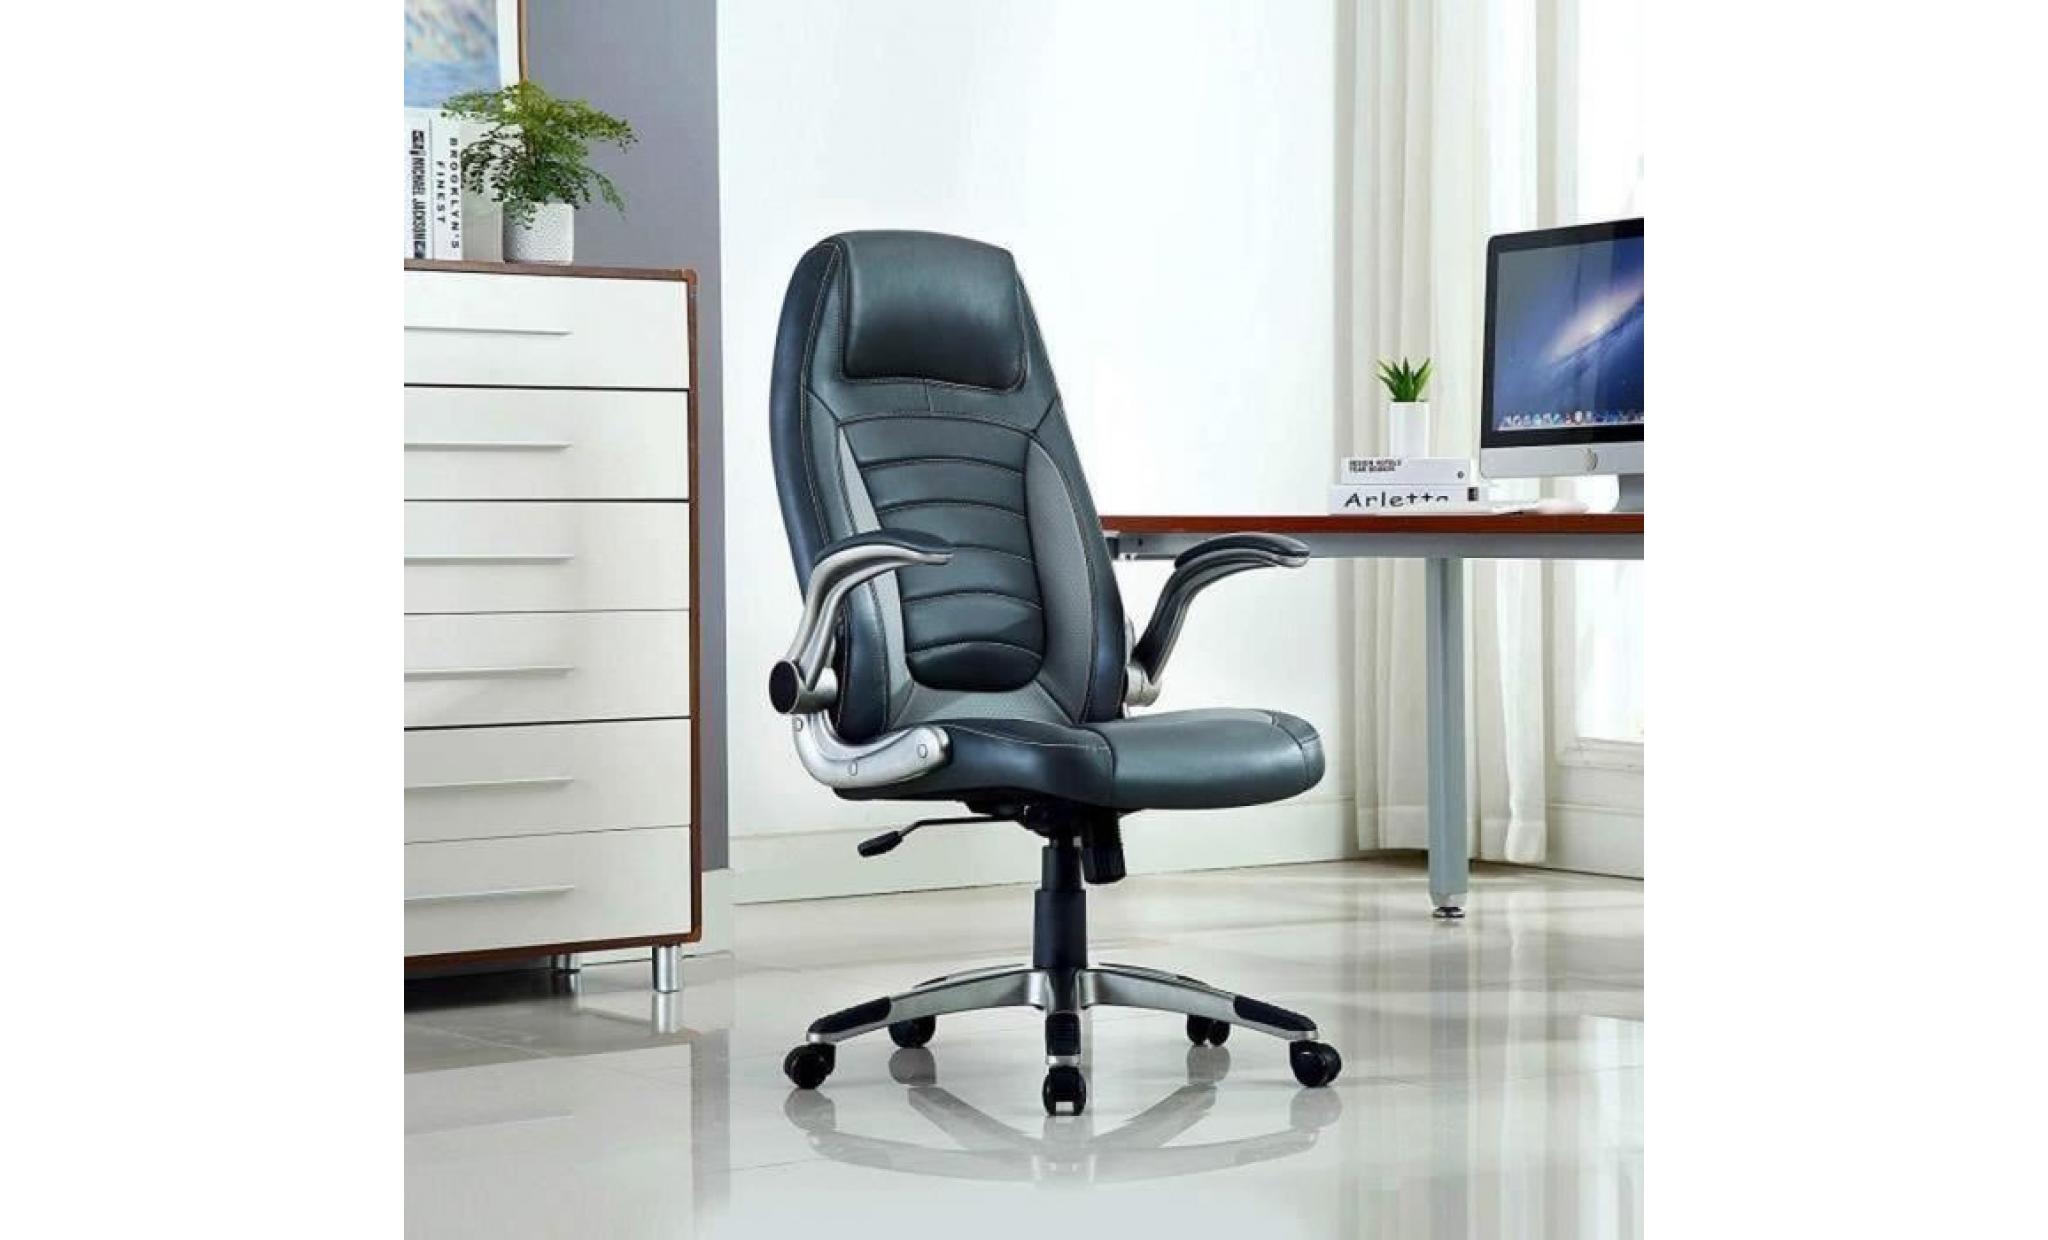 chaise de bureau   fauteuil gamer   siège pu hauteur réglable   chaise d'ordinateur   rouge   intimate wm heart